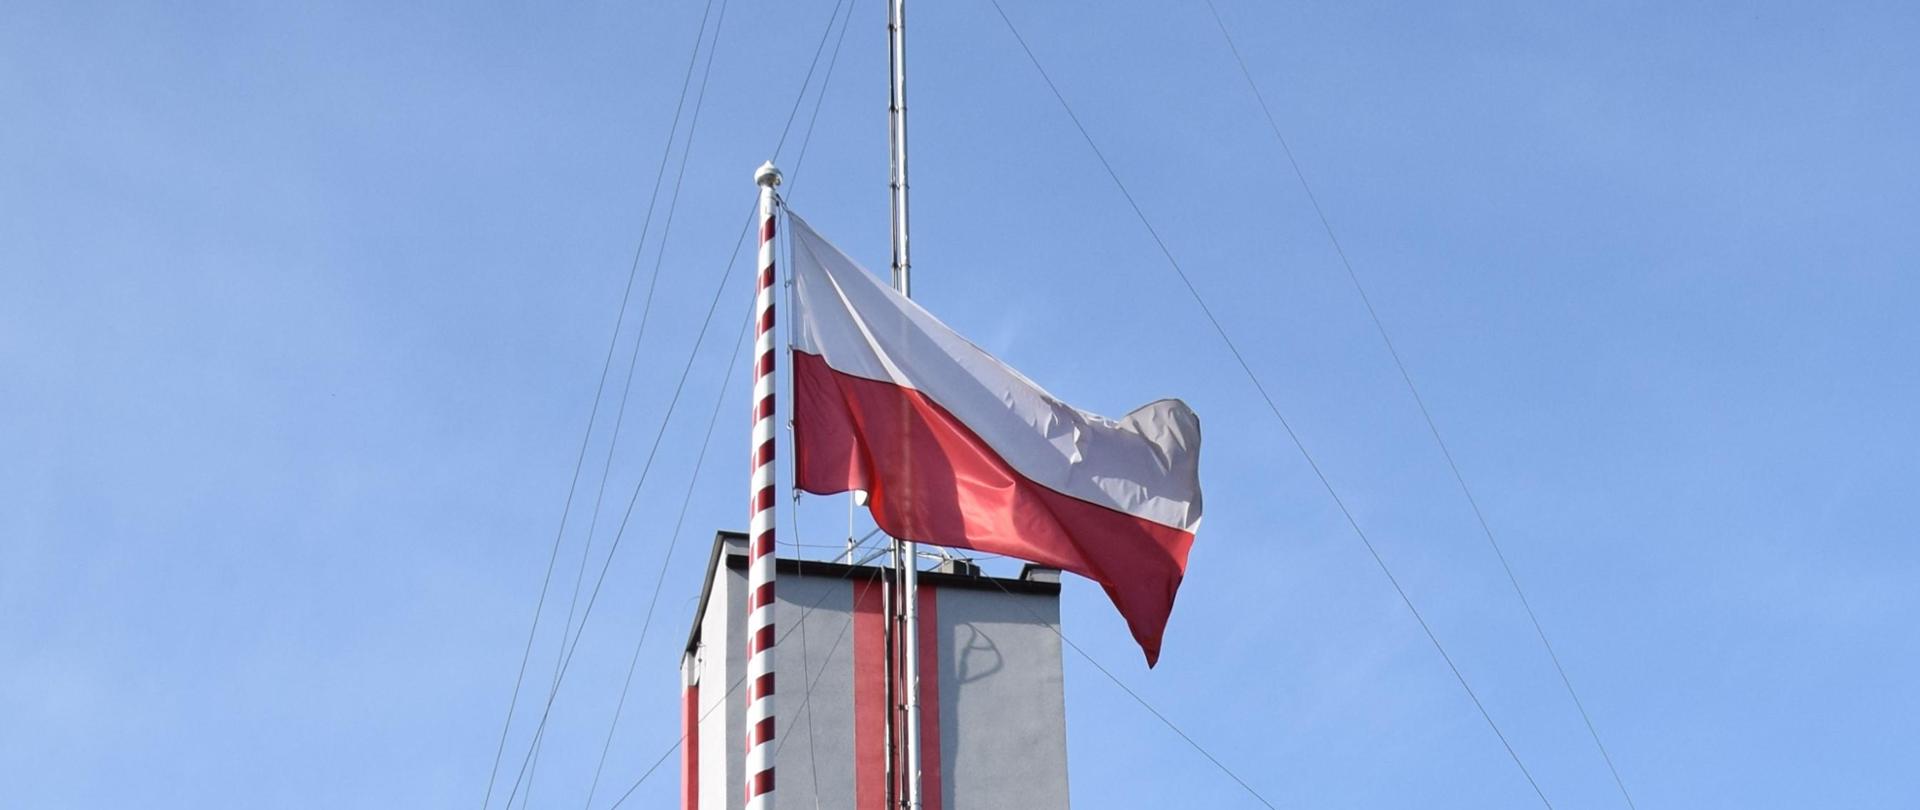 Poczet flagowy wznosi flagę państwową na maszt przed budynkiem KP PSP w Mińsku Mazowieckim podczas uroczystej zmiany służby. Obecni są funkcjonariusze ze zmiany zdającej, przyjmującej, Zastępca Dowódcy JRG oraz Komendant Powiatowy PSP